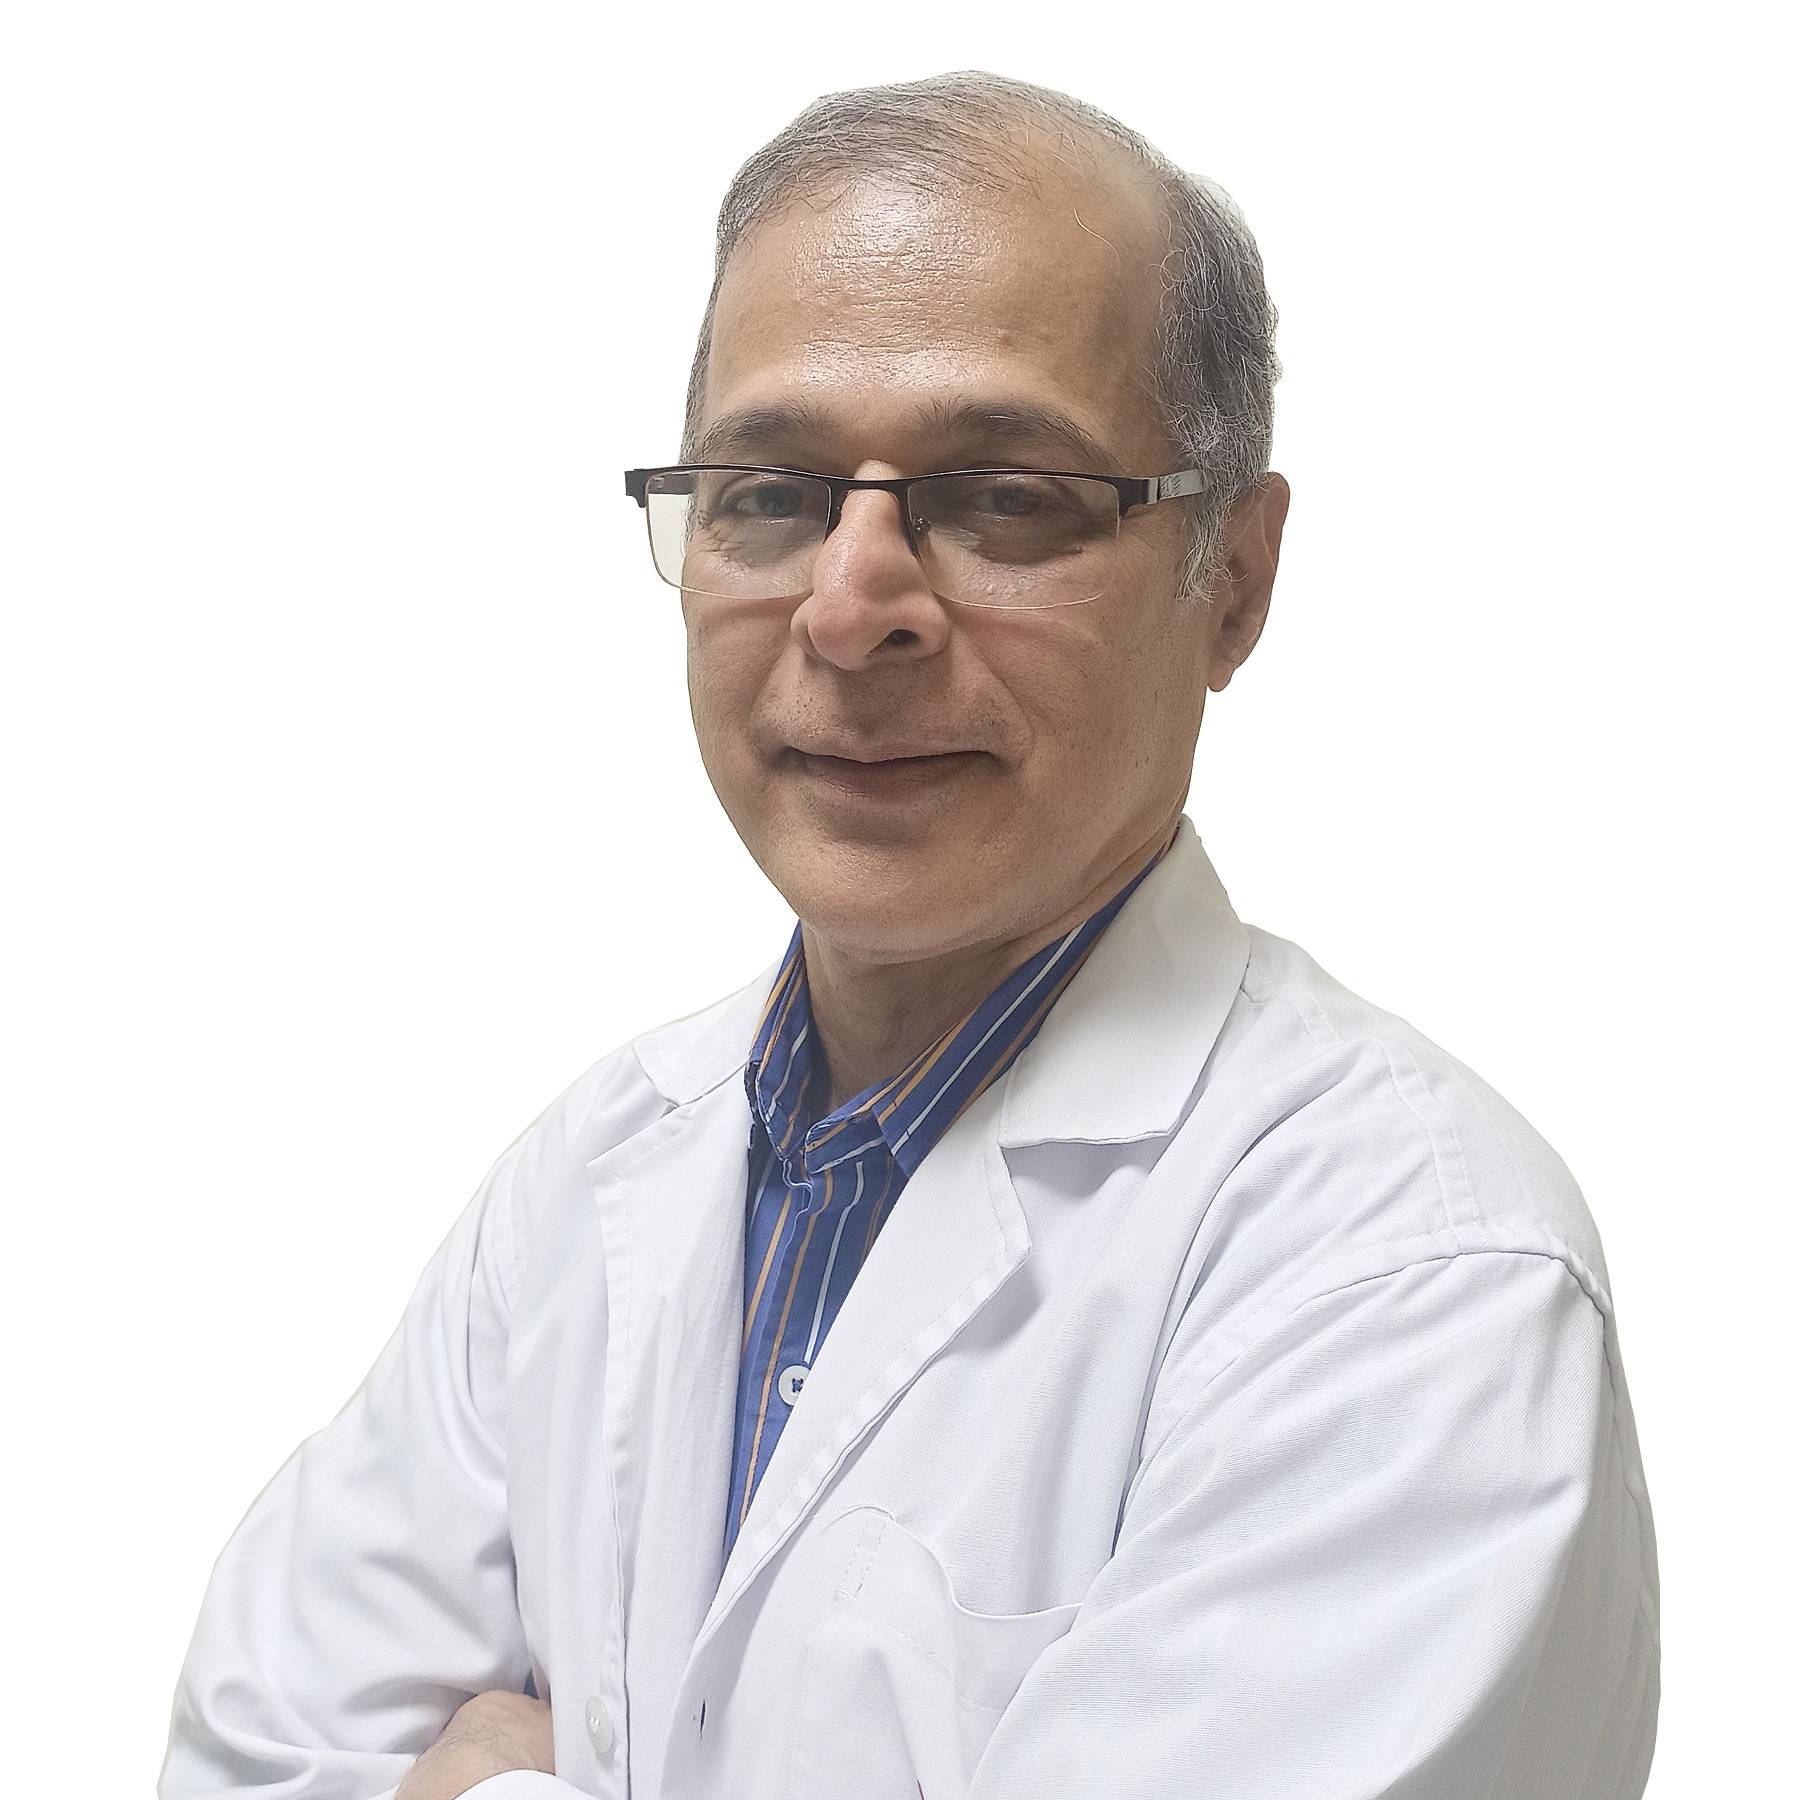 Dr. GIRISH SABNIS